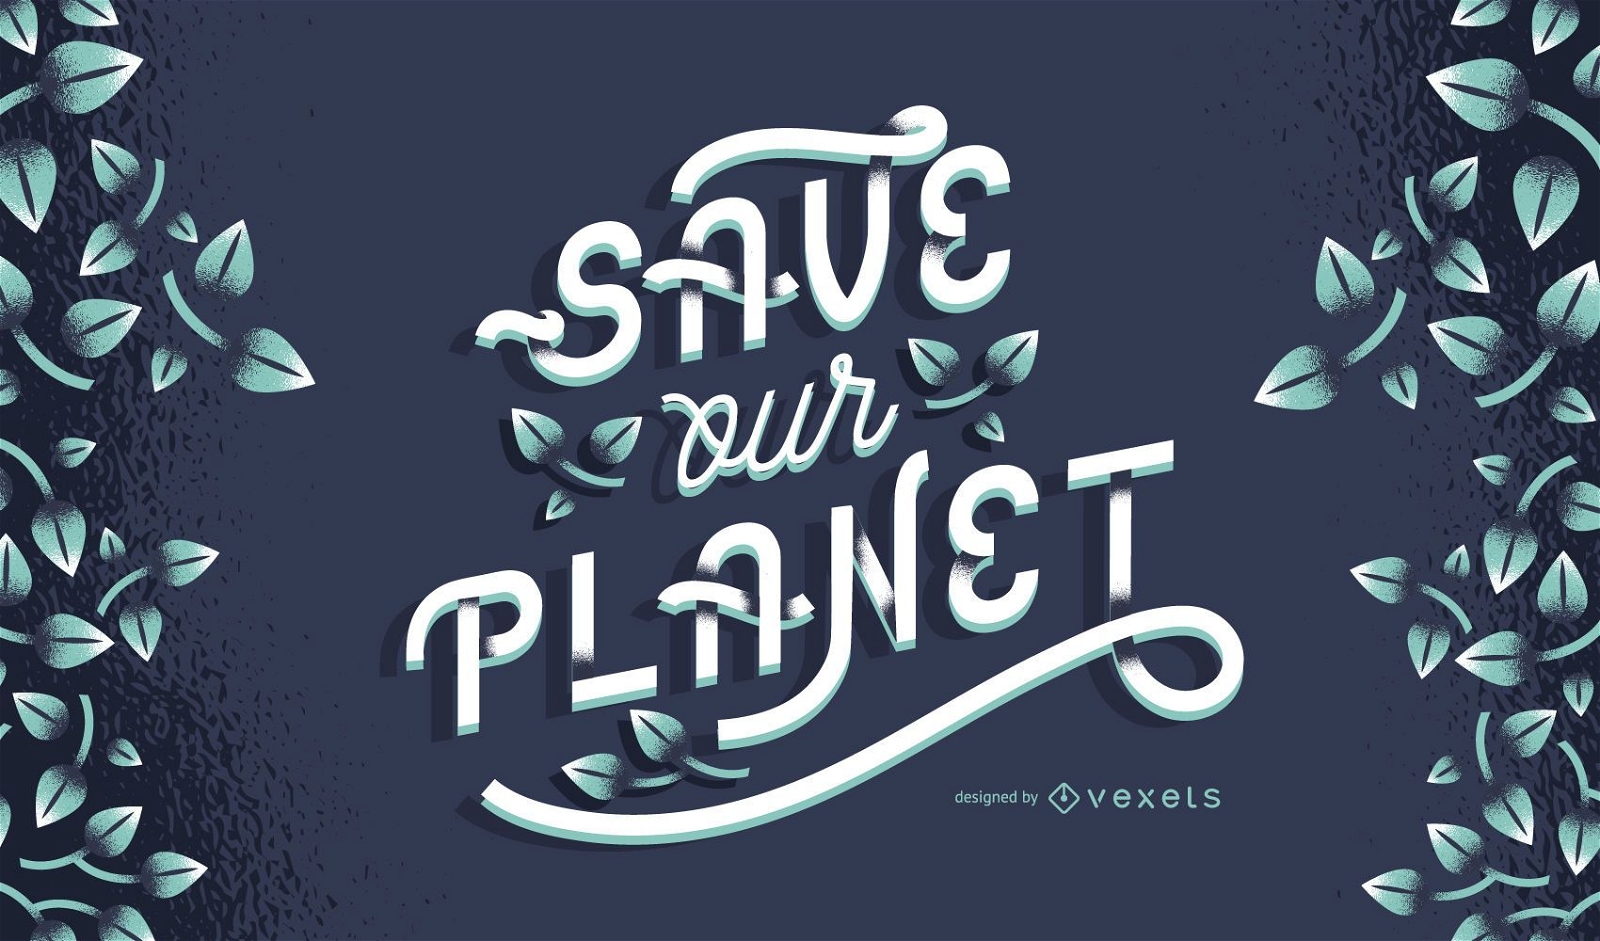 Speichern Sie unser Planet Lettering Design